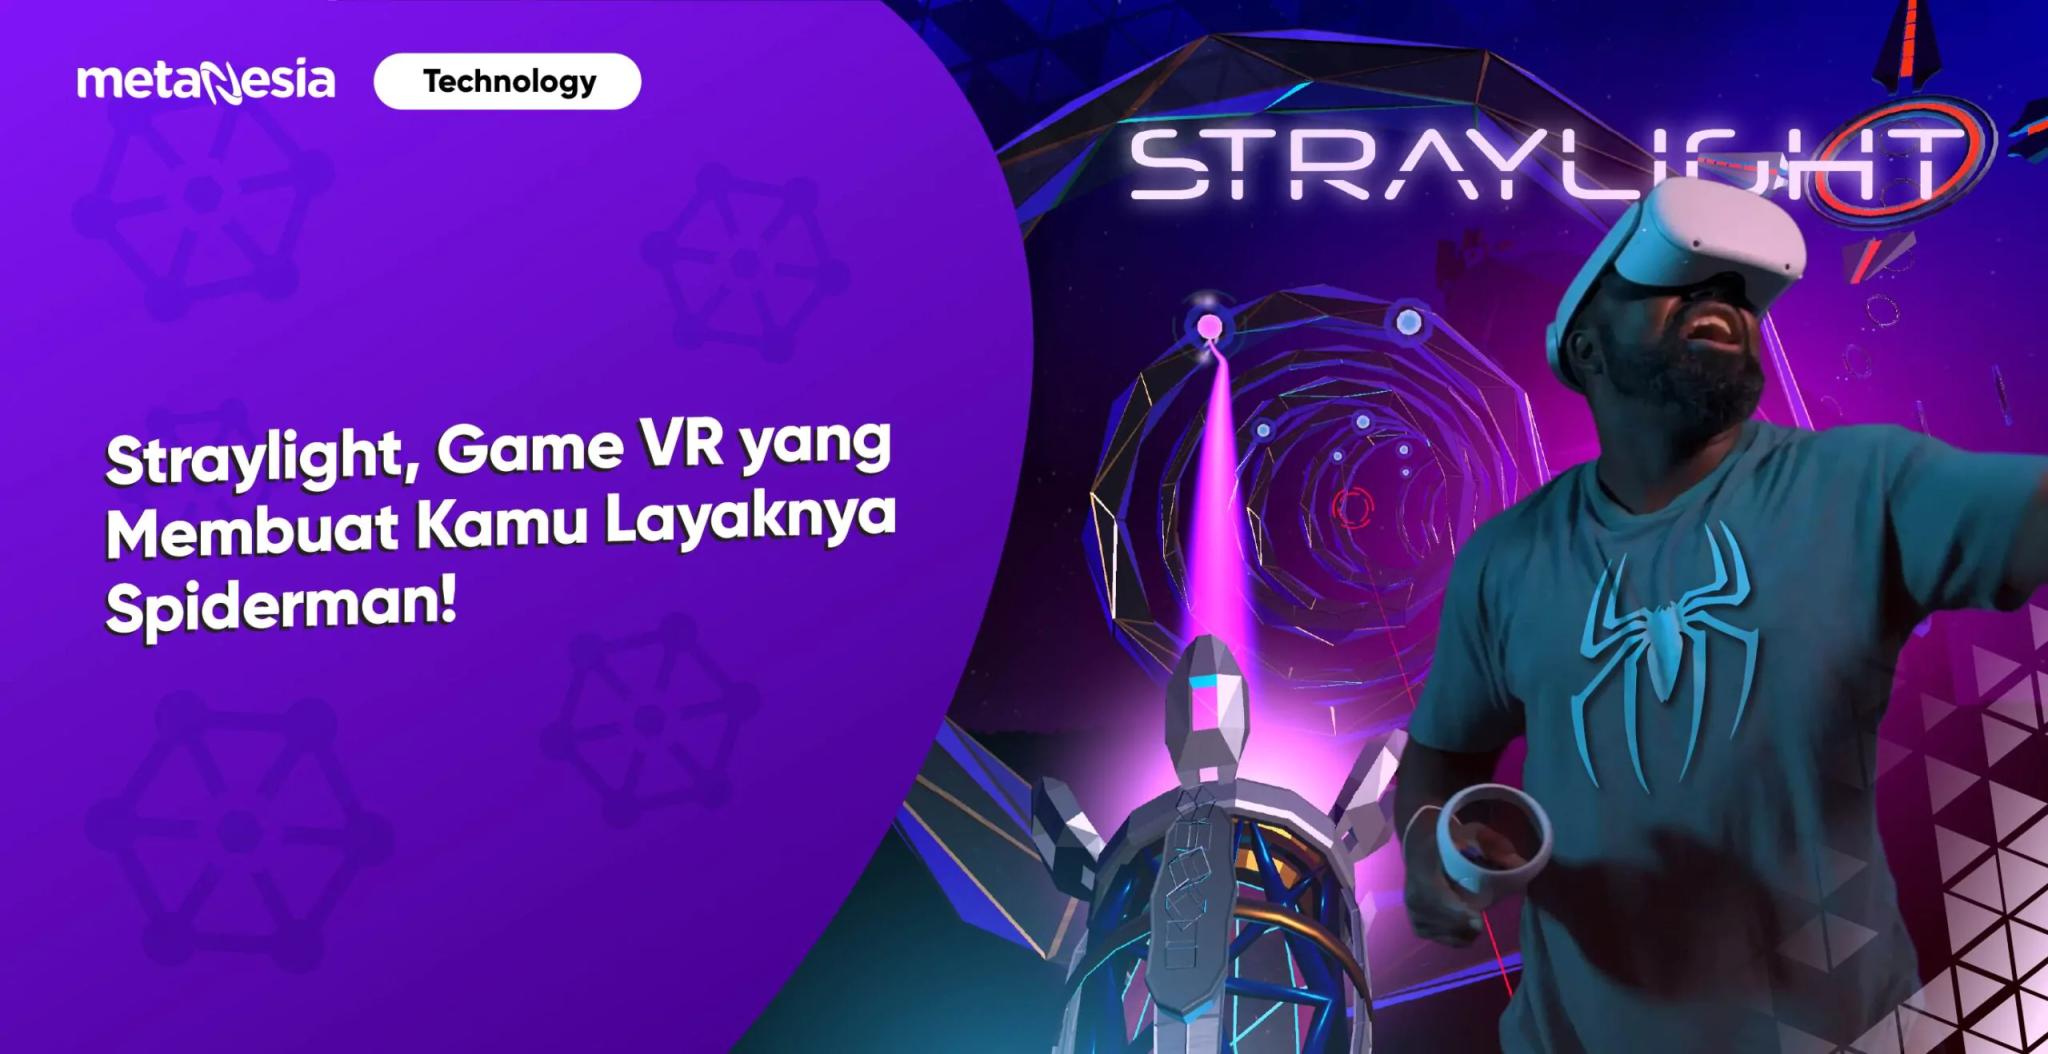 Game VR Straylight dapat Membuat Kamu Menjadi Seperti Spiderman!